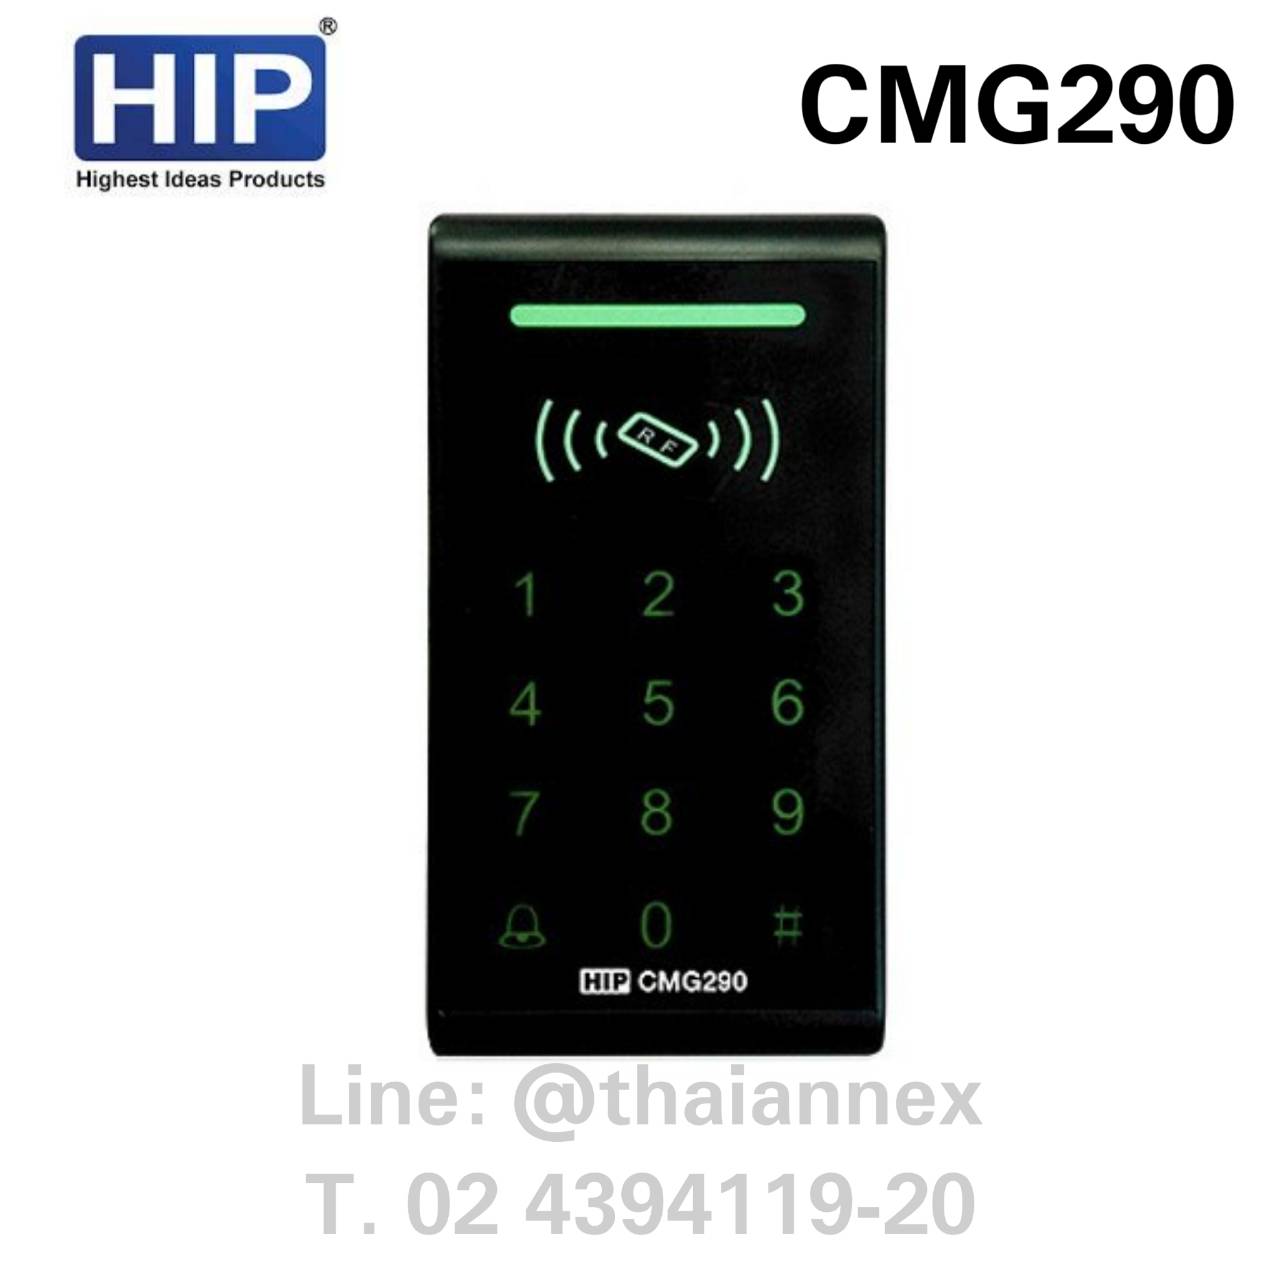 เครื่องทาบบัตร HIP CMG290 (ควบคุมประตูได้)